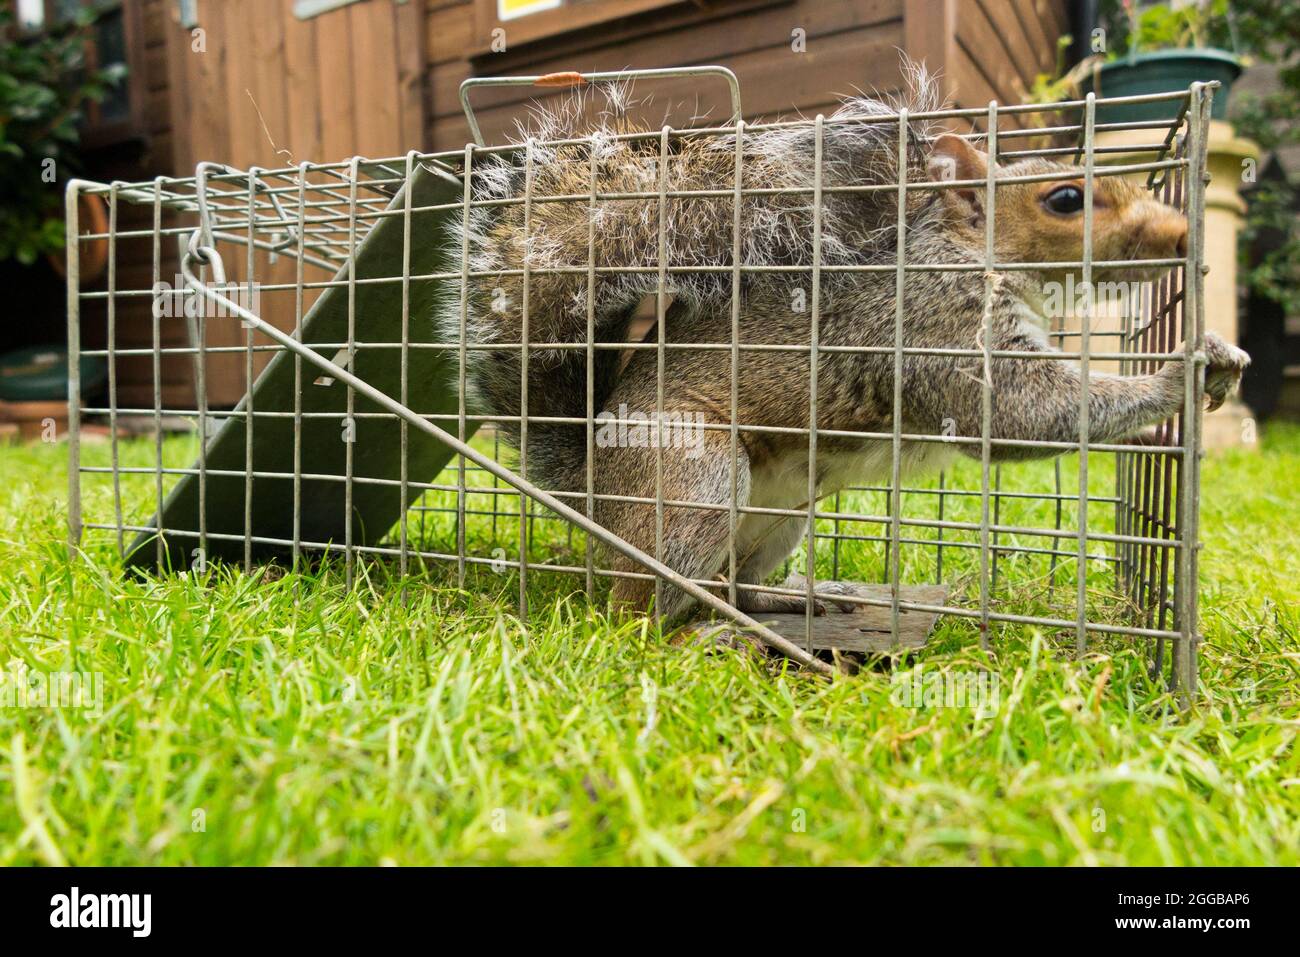 Écureuil gris sauvage pris et piégé dans un piège humain après avoir causé une nuisance dans un jardin de banlieue en creusant la pelouse. Les écureuils sont un ravageur de la vermine. ROYAUME-UNI (127) Banque D'Images